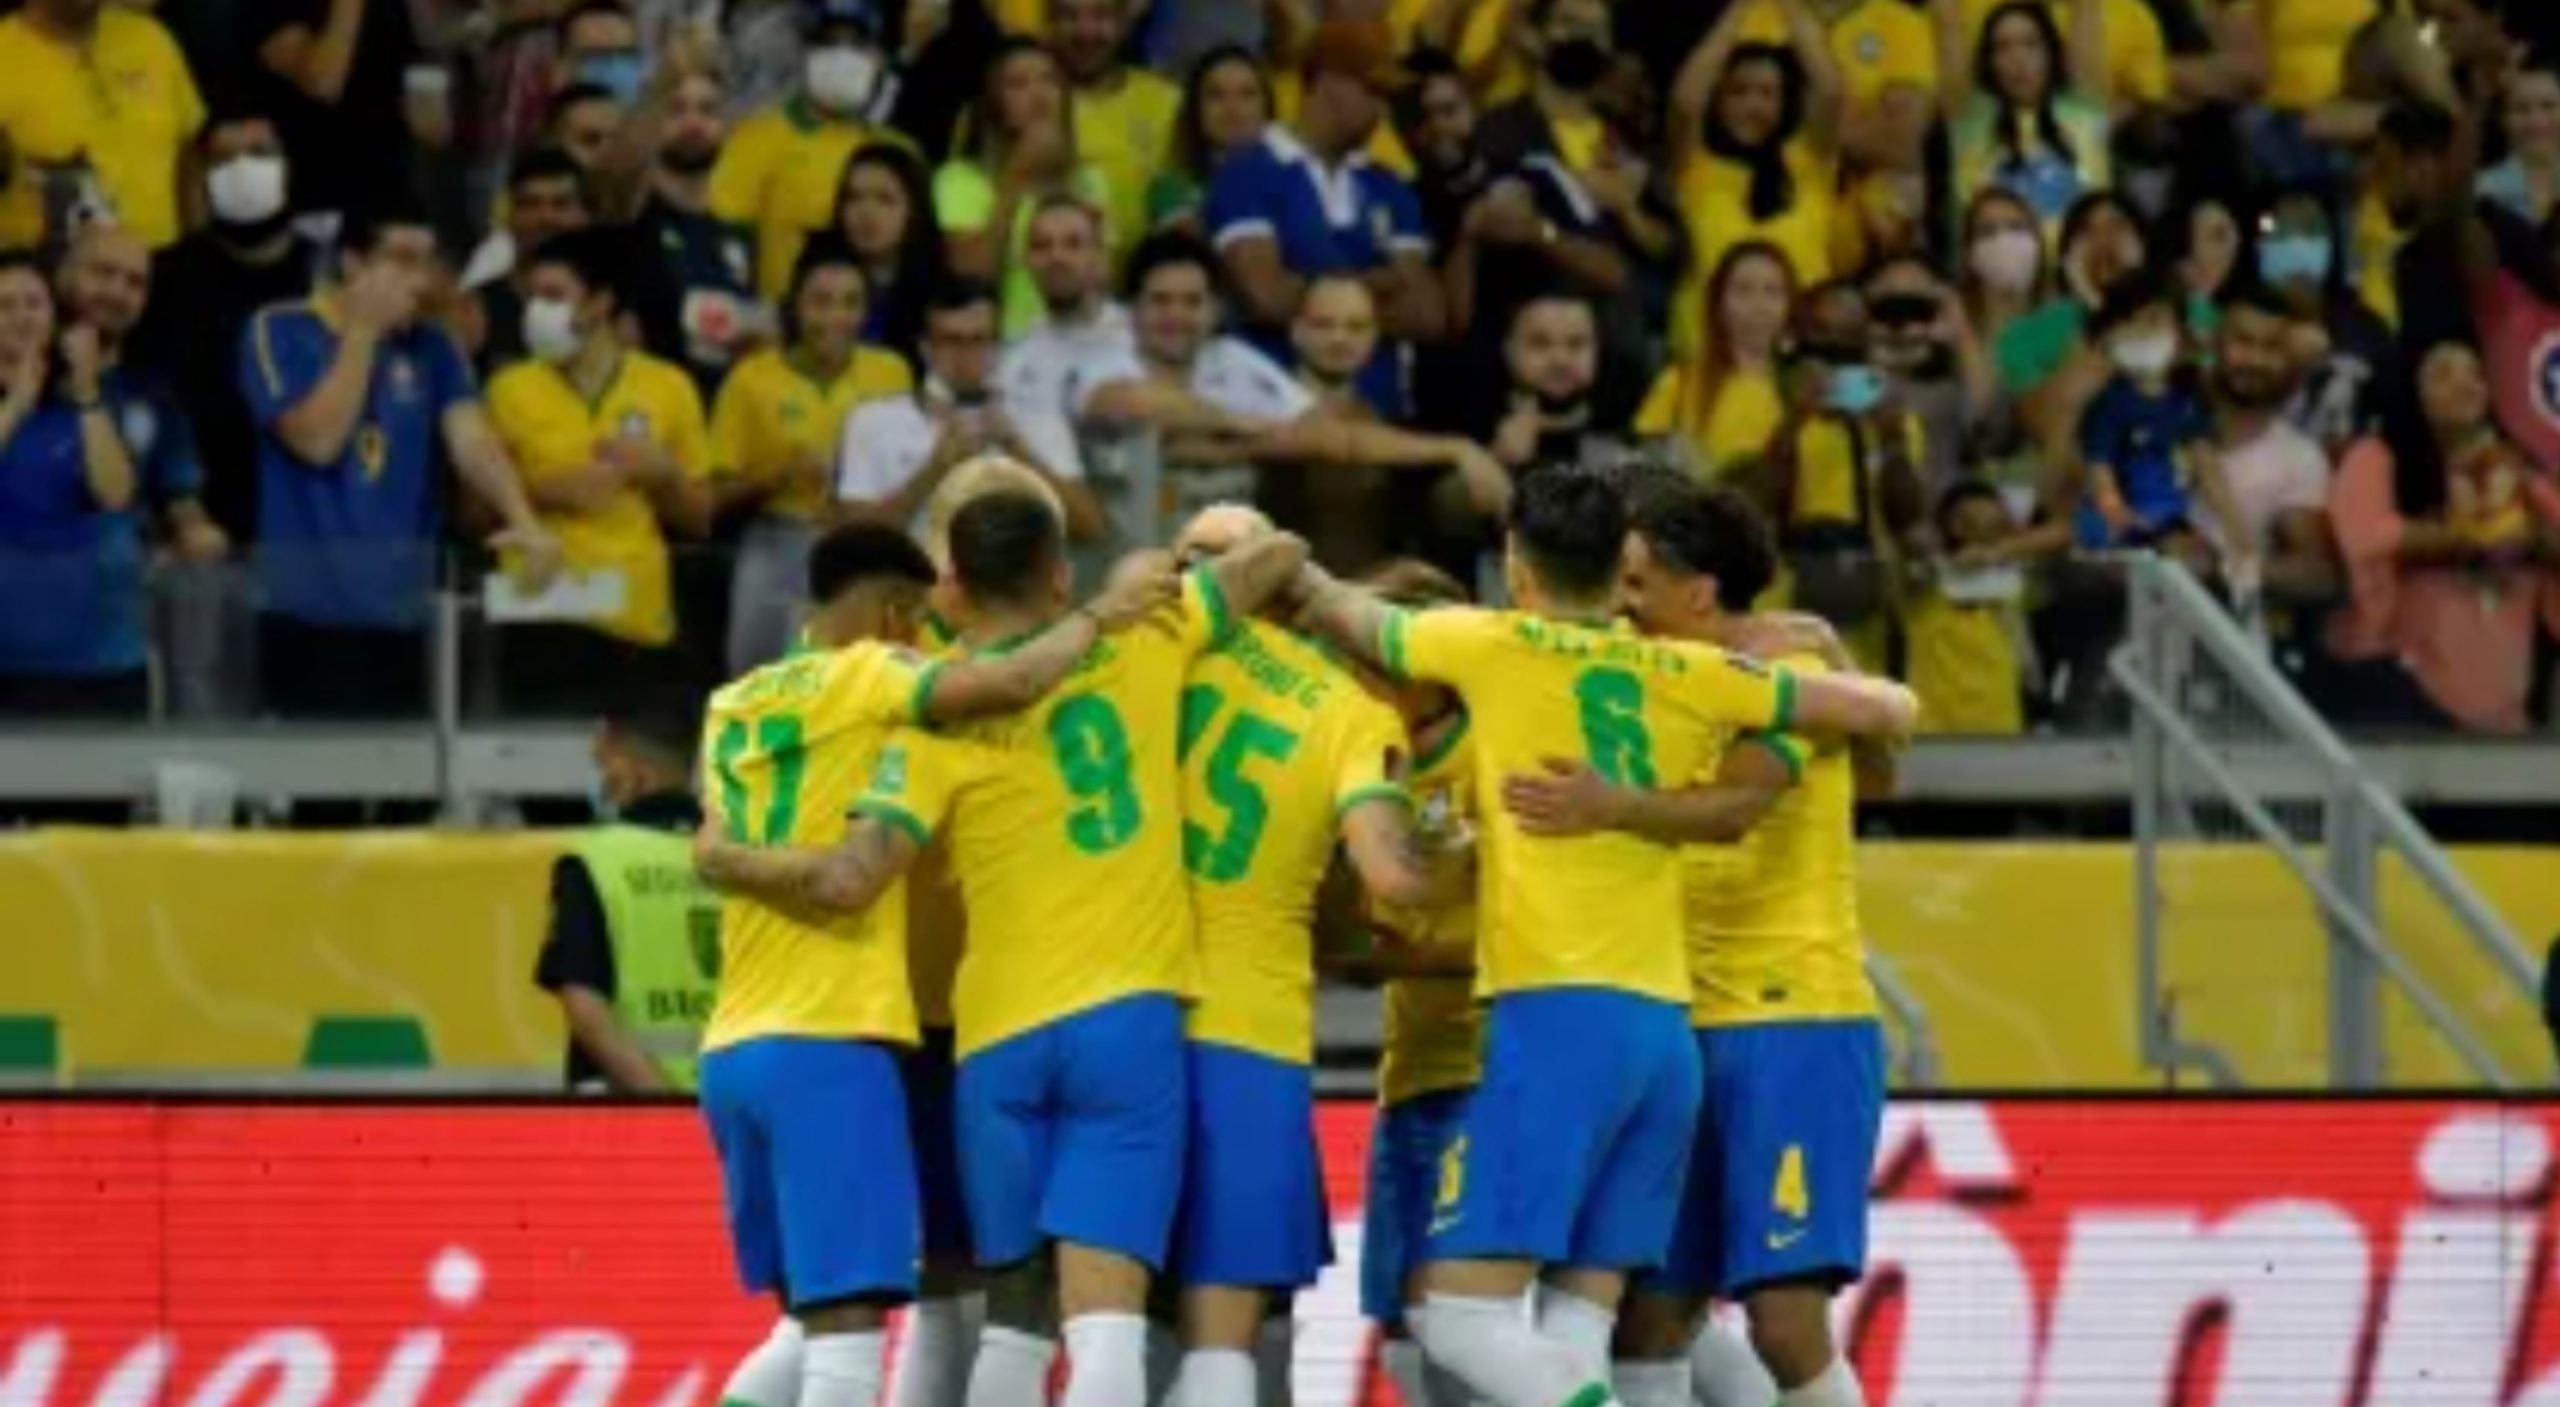 Brasil na Copa do Mundo 2022: datas dos jogos, horários e onde assistir